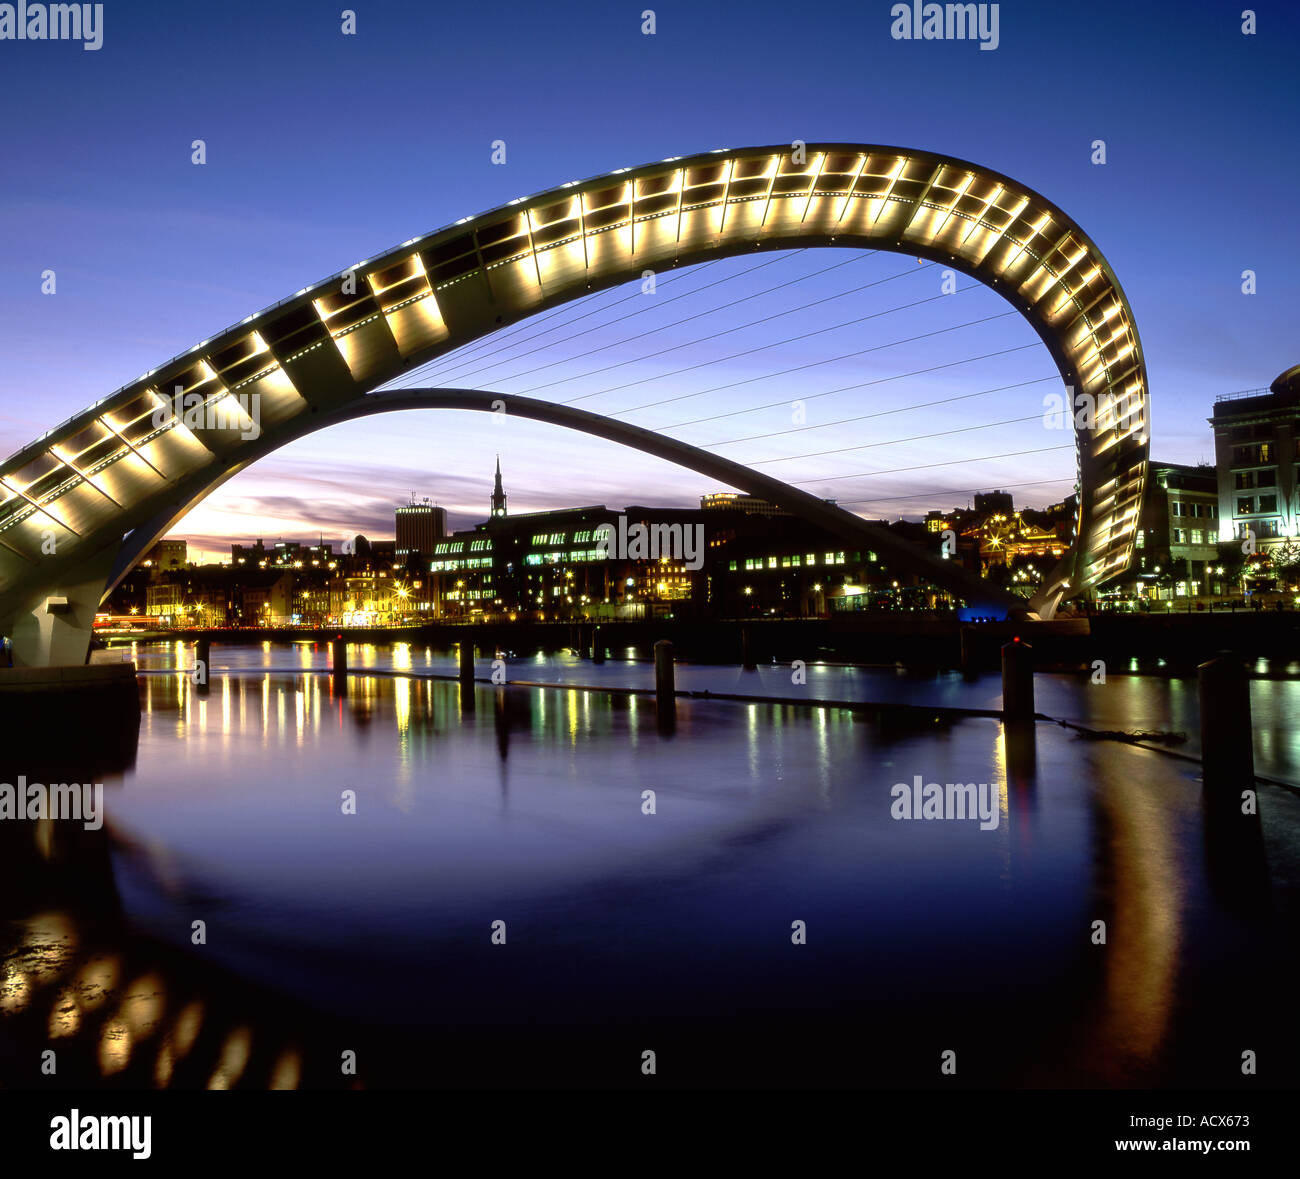 Le London Eye Bridge en position relevée la nuit Newcastle upon Tyne Tyne et Wear, Angleterre Royaume-uni Banque D'Images